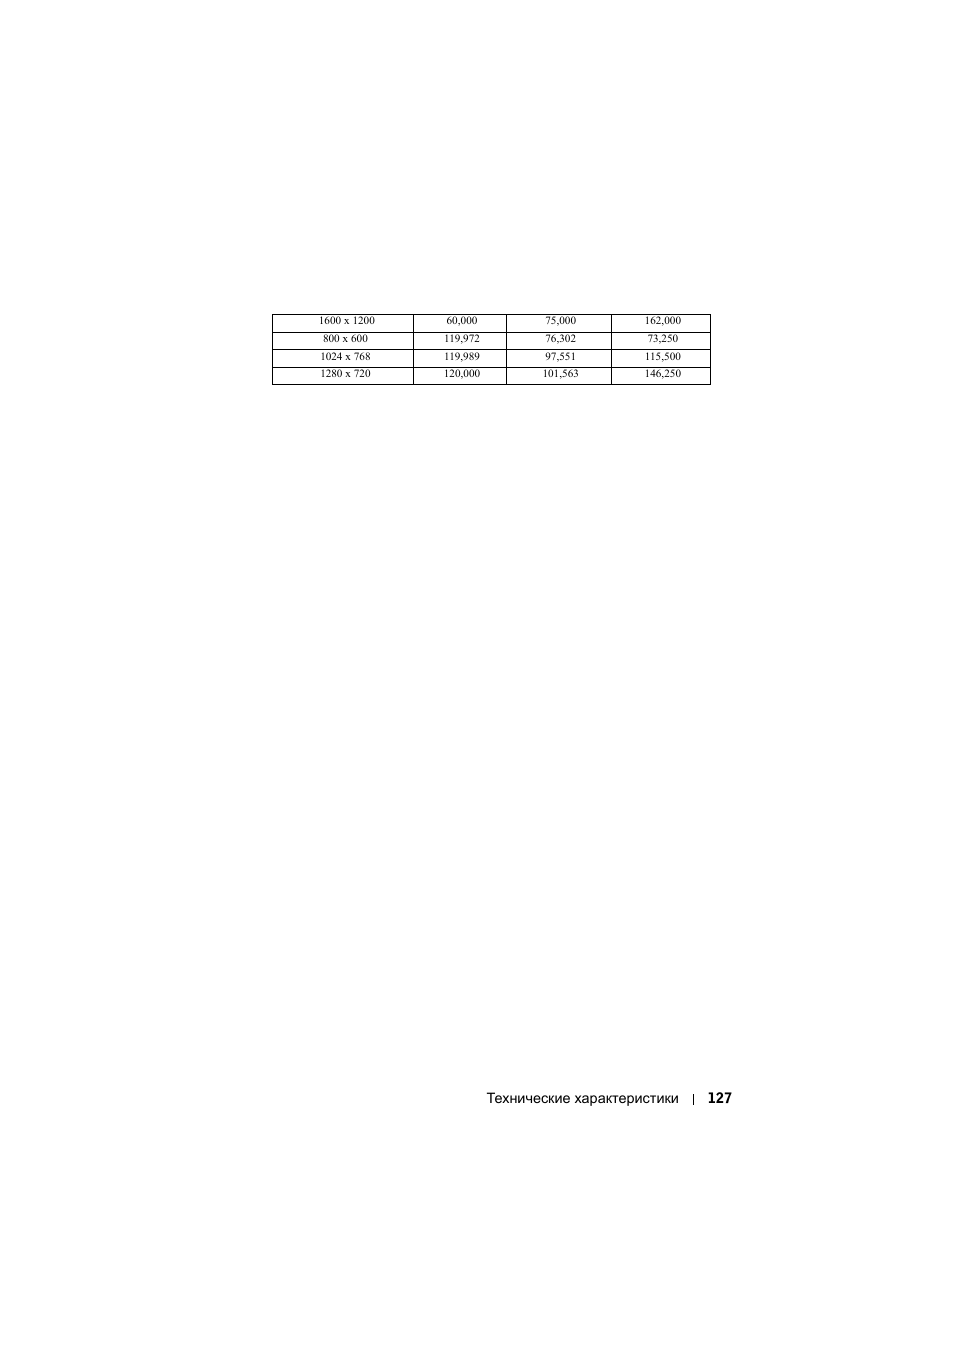 Технические характеристики 127 | Инструкция по эксплуатации Dell S500wi Projector | Страница 127 / 135